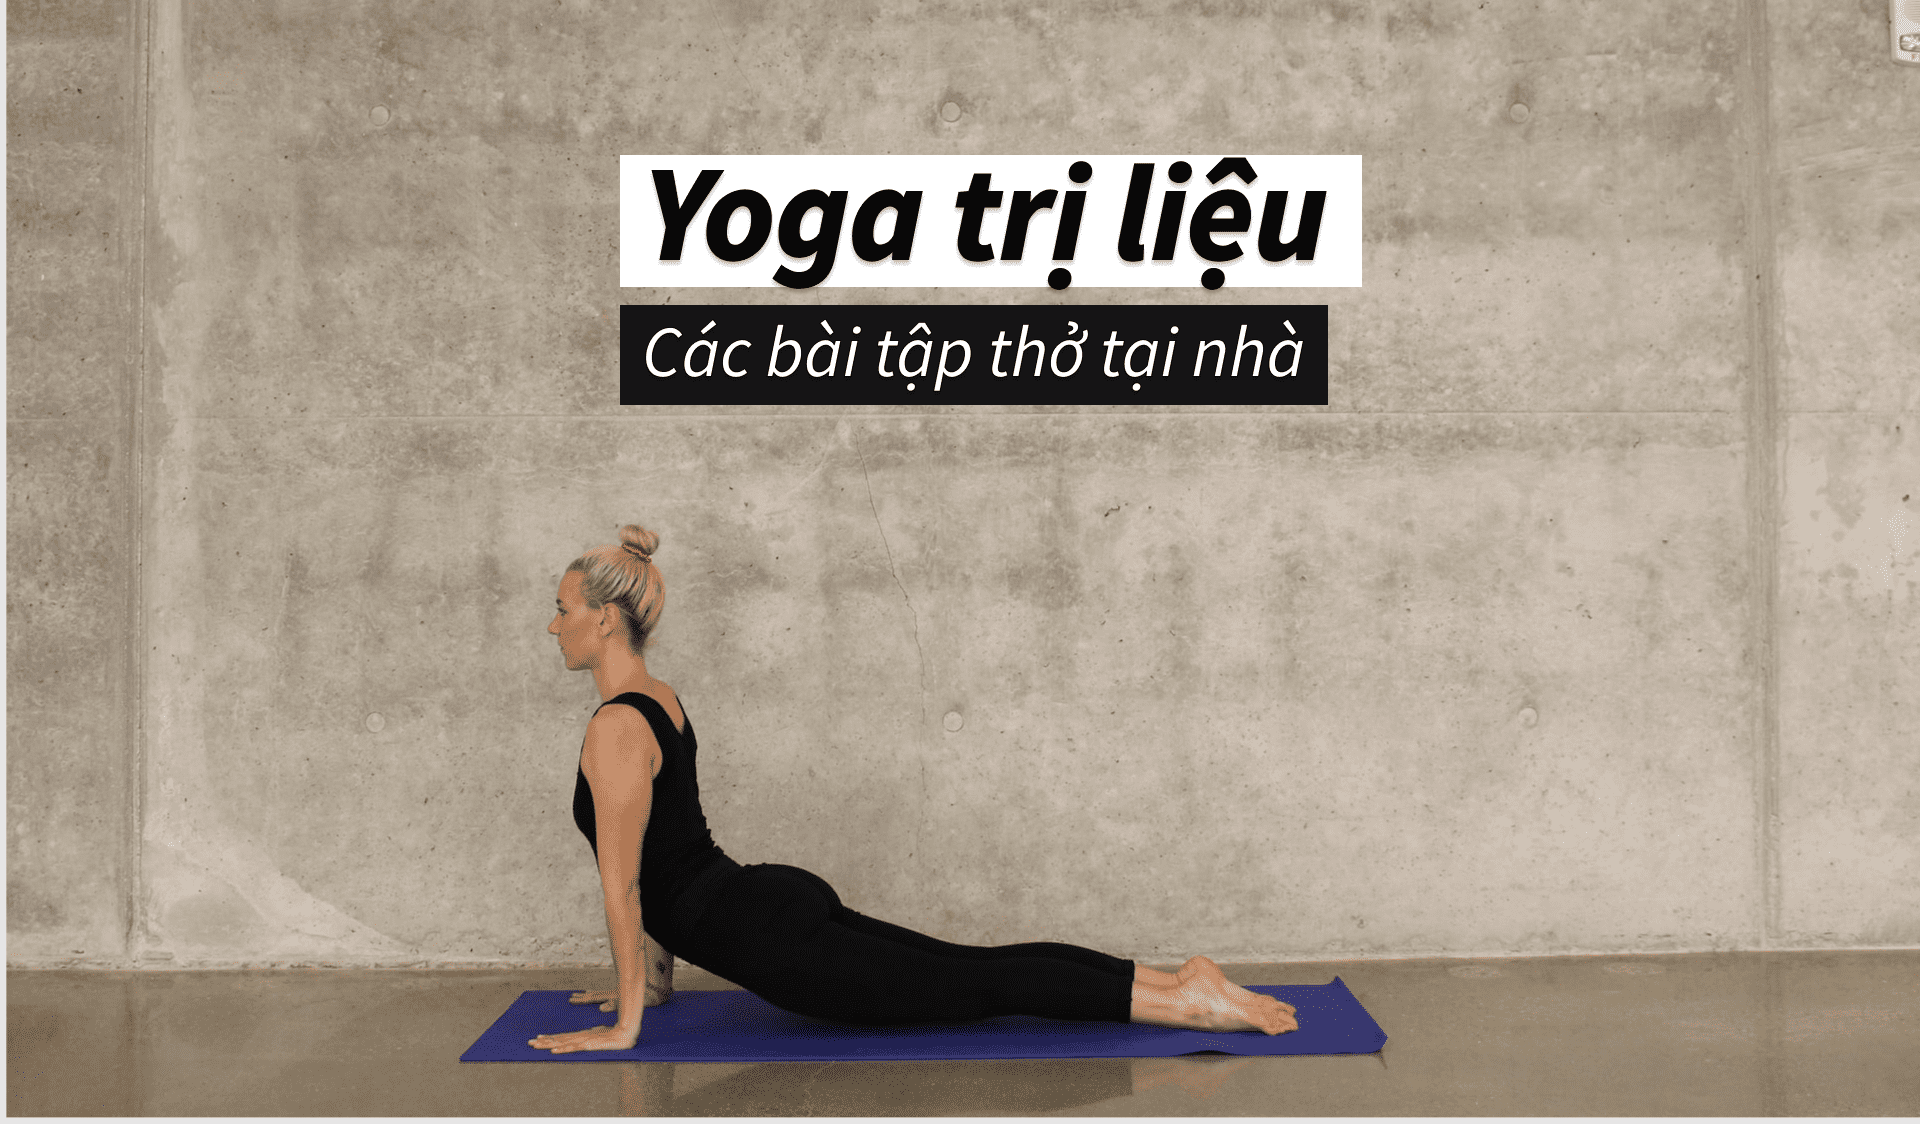 Lợi ích của việc kết hợp yoga thở trị liệu và yoga cơ bản là gì?
